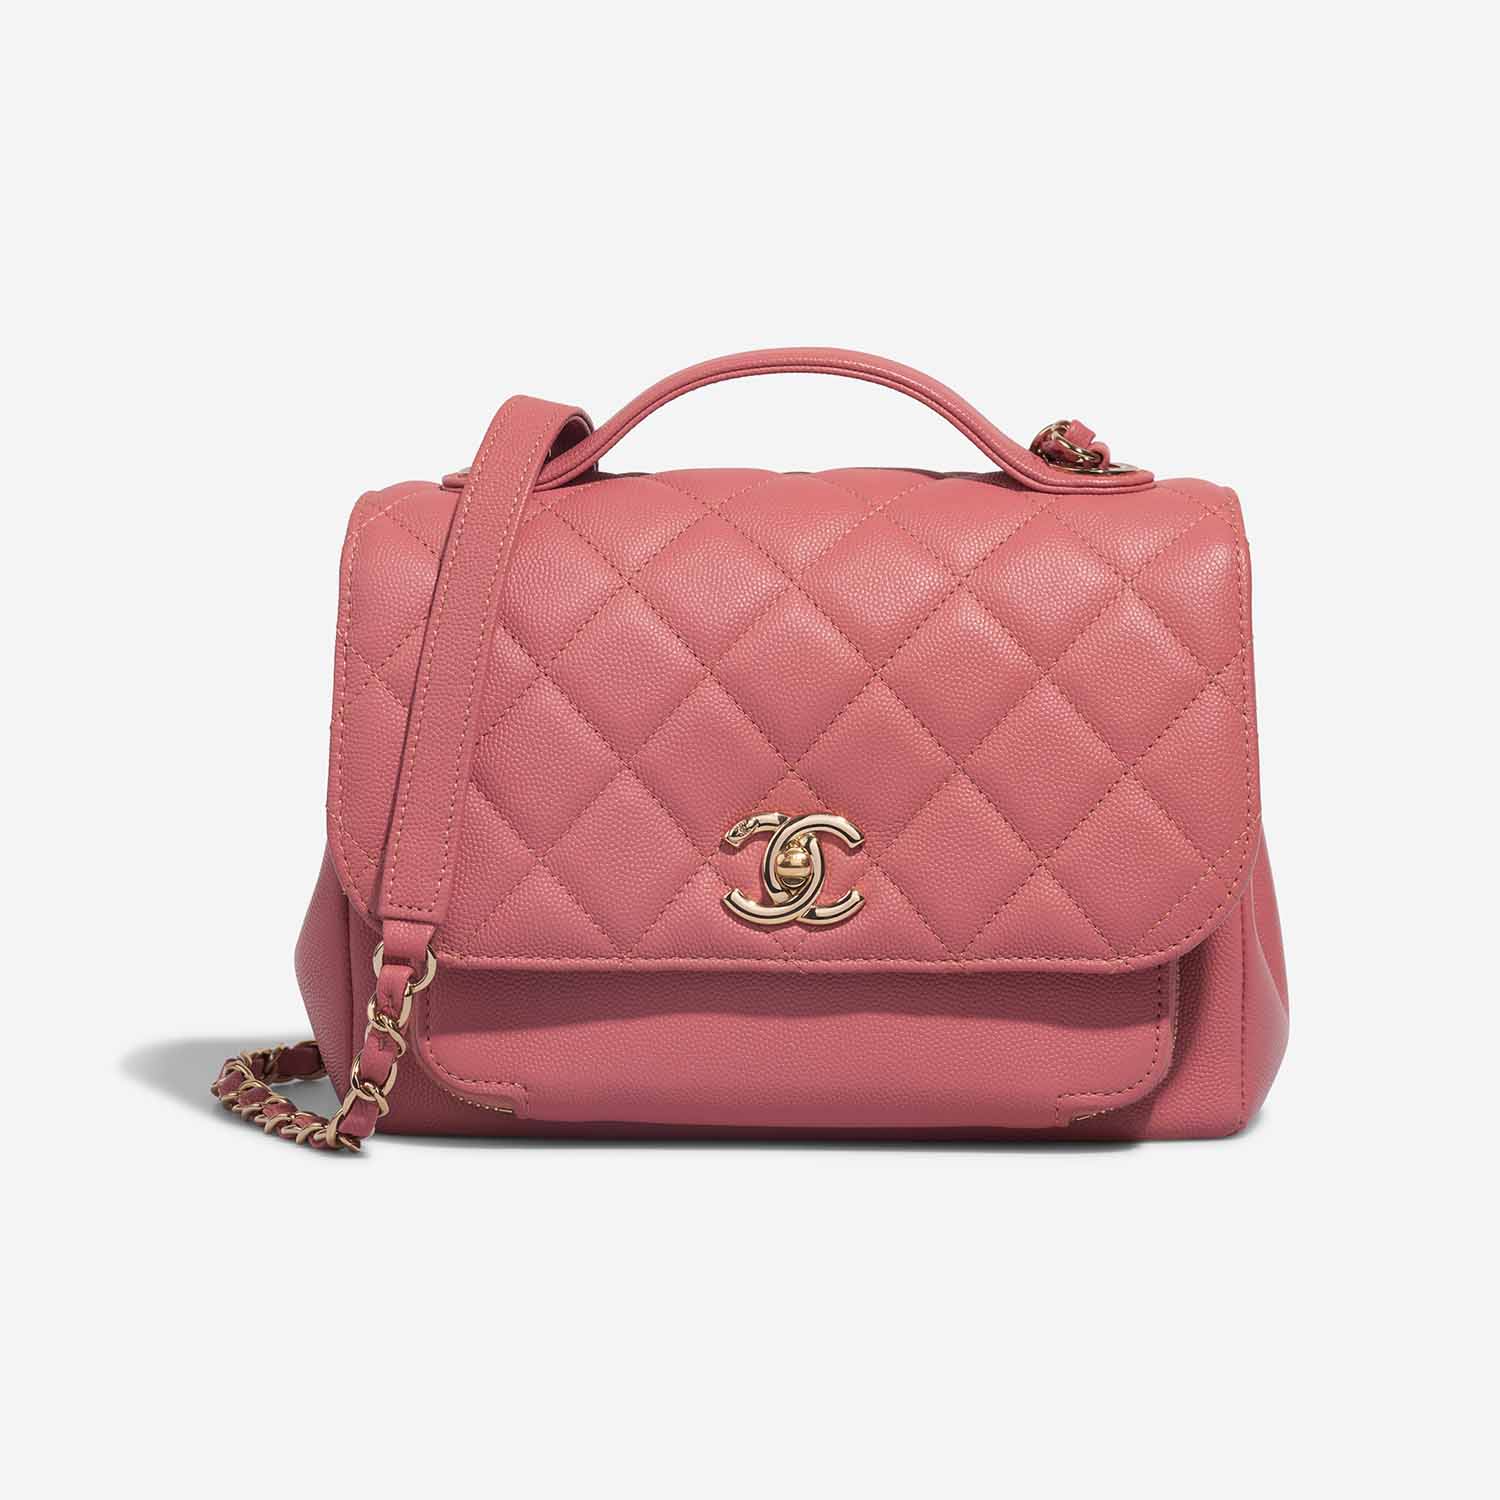 Chanel Business Affinity Medium Coral Pink Front S | Verkaufen Sie Ihre Designer-Tasche auf Saclab.com